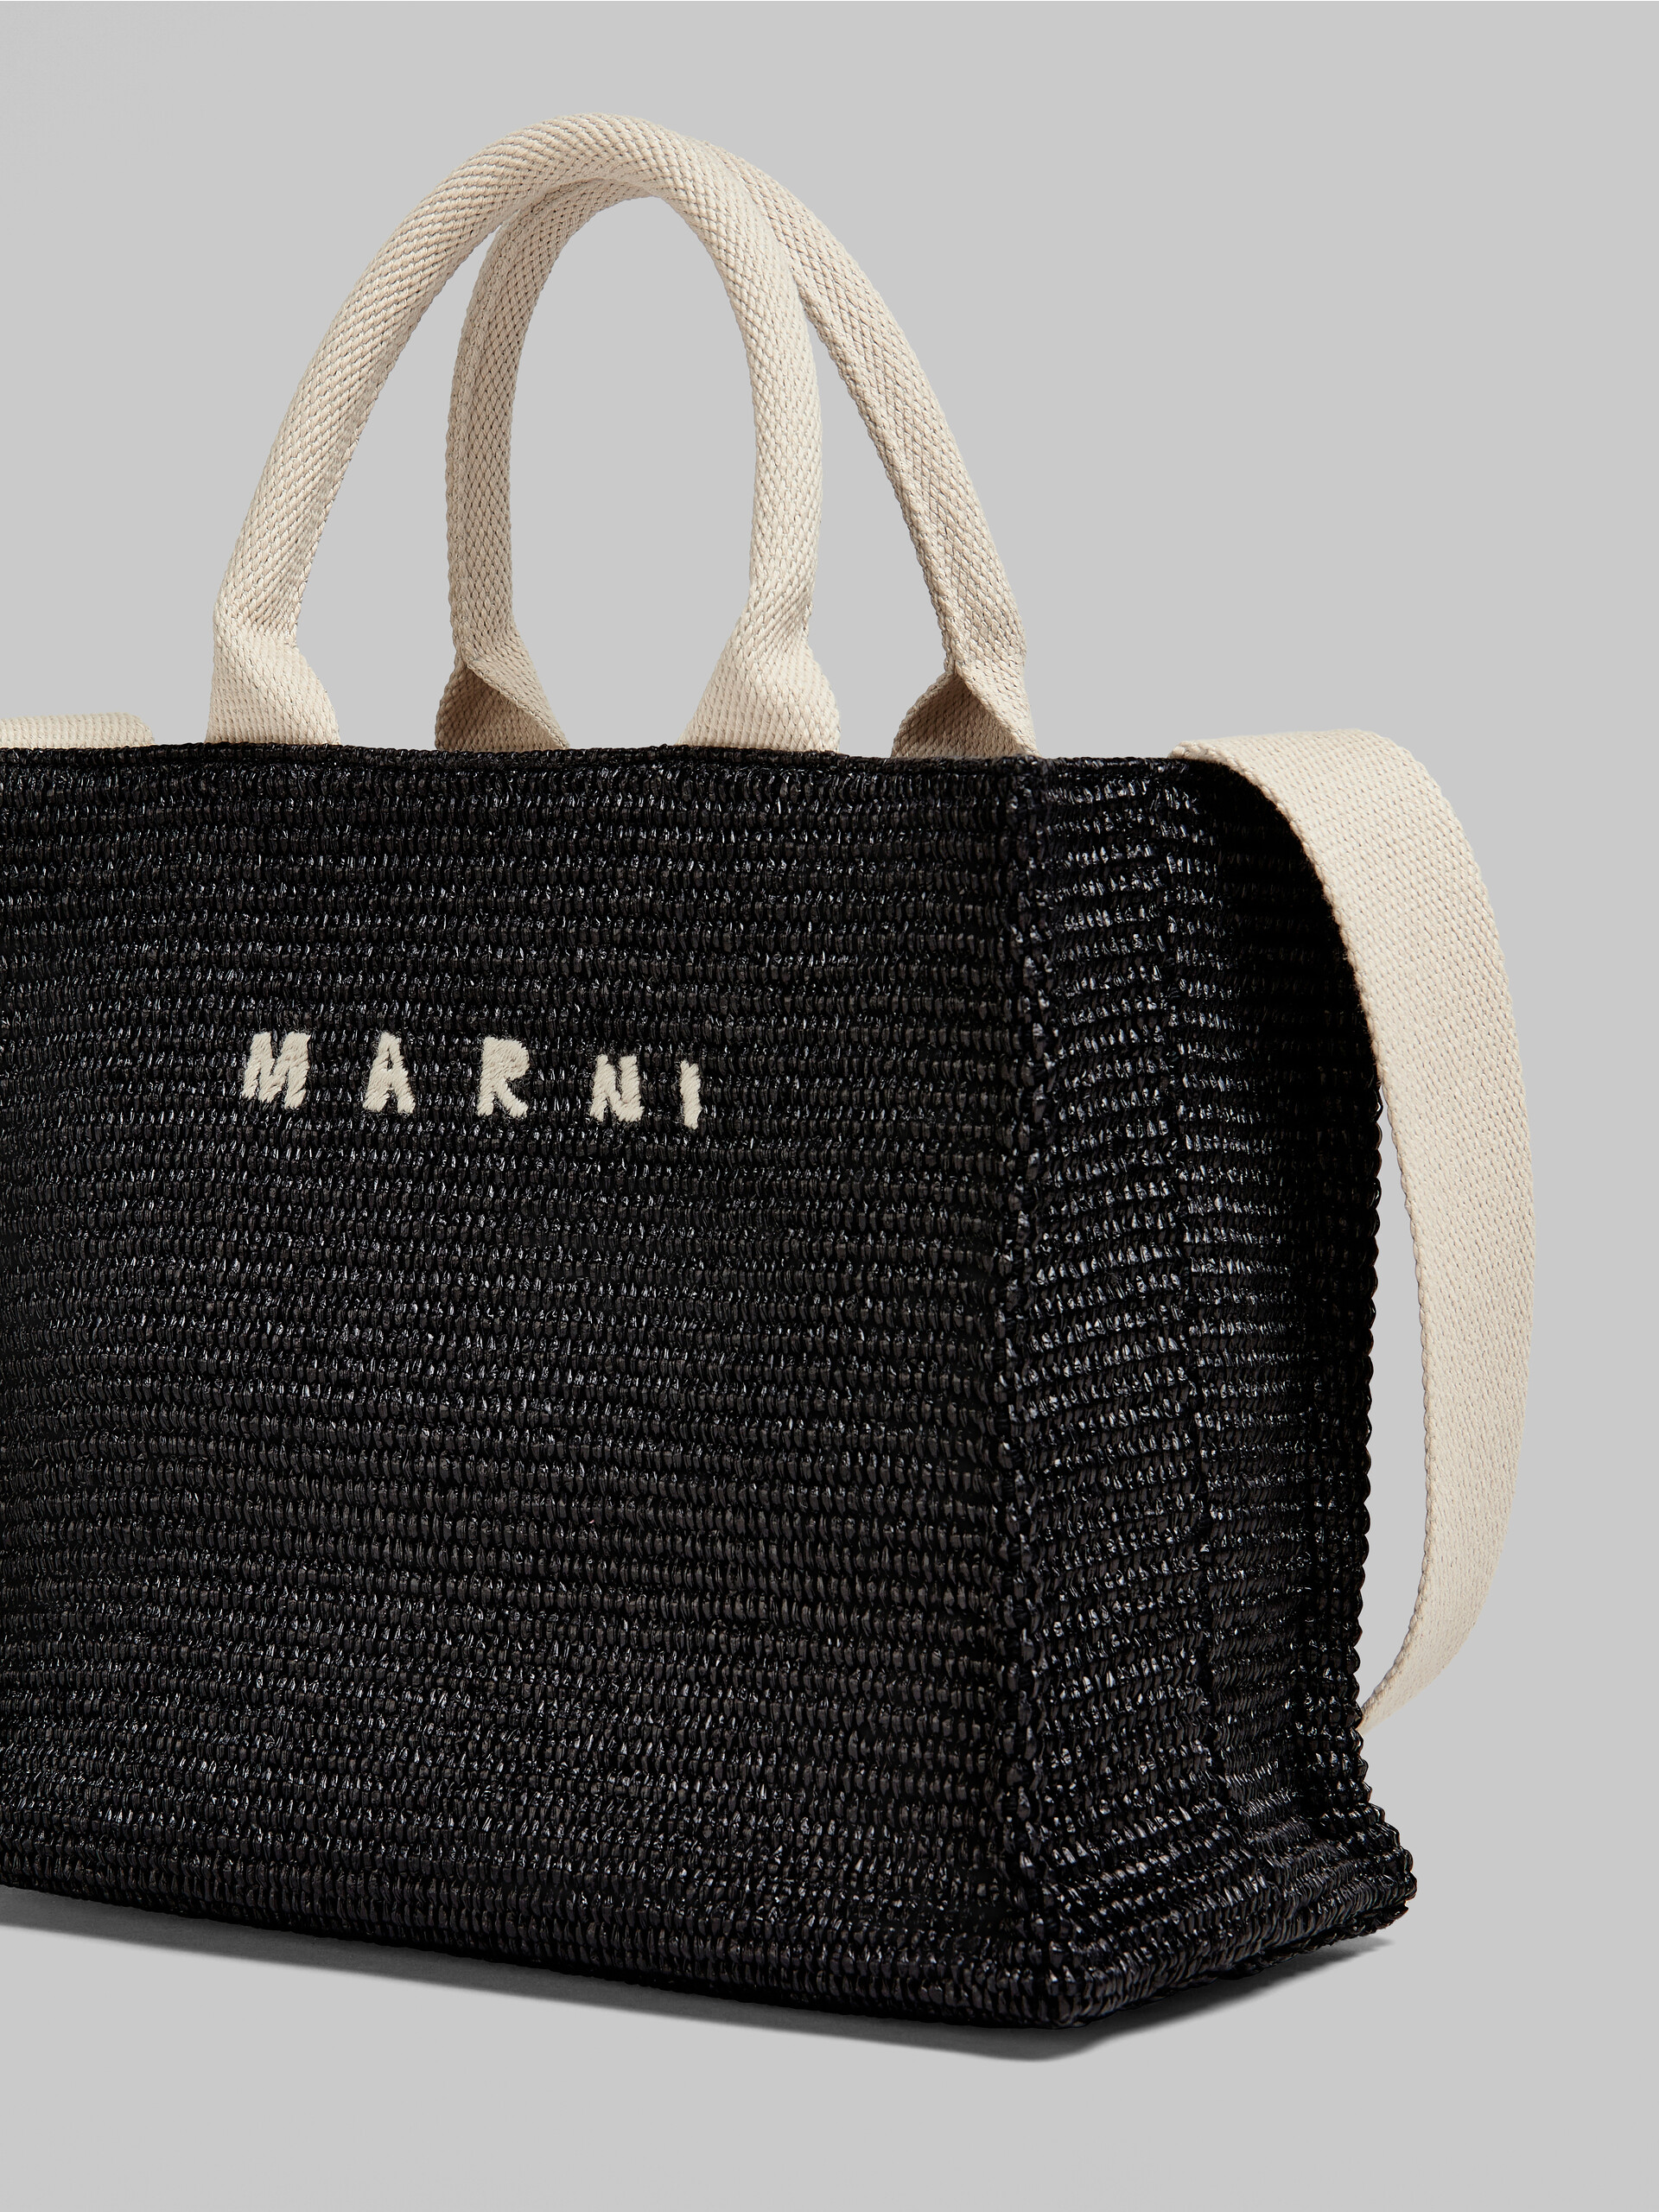 Small black raffia tote bag - Shopping Bags - Image 5